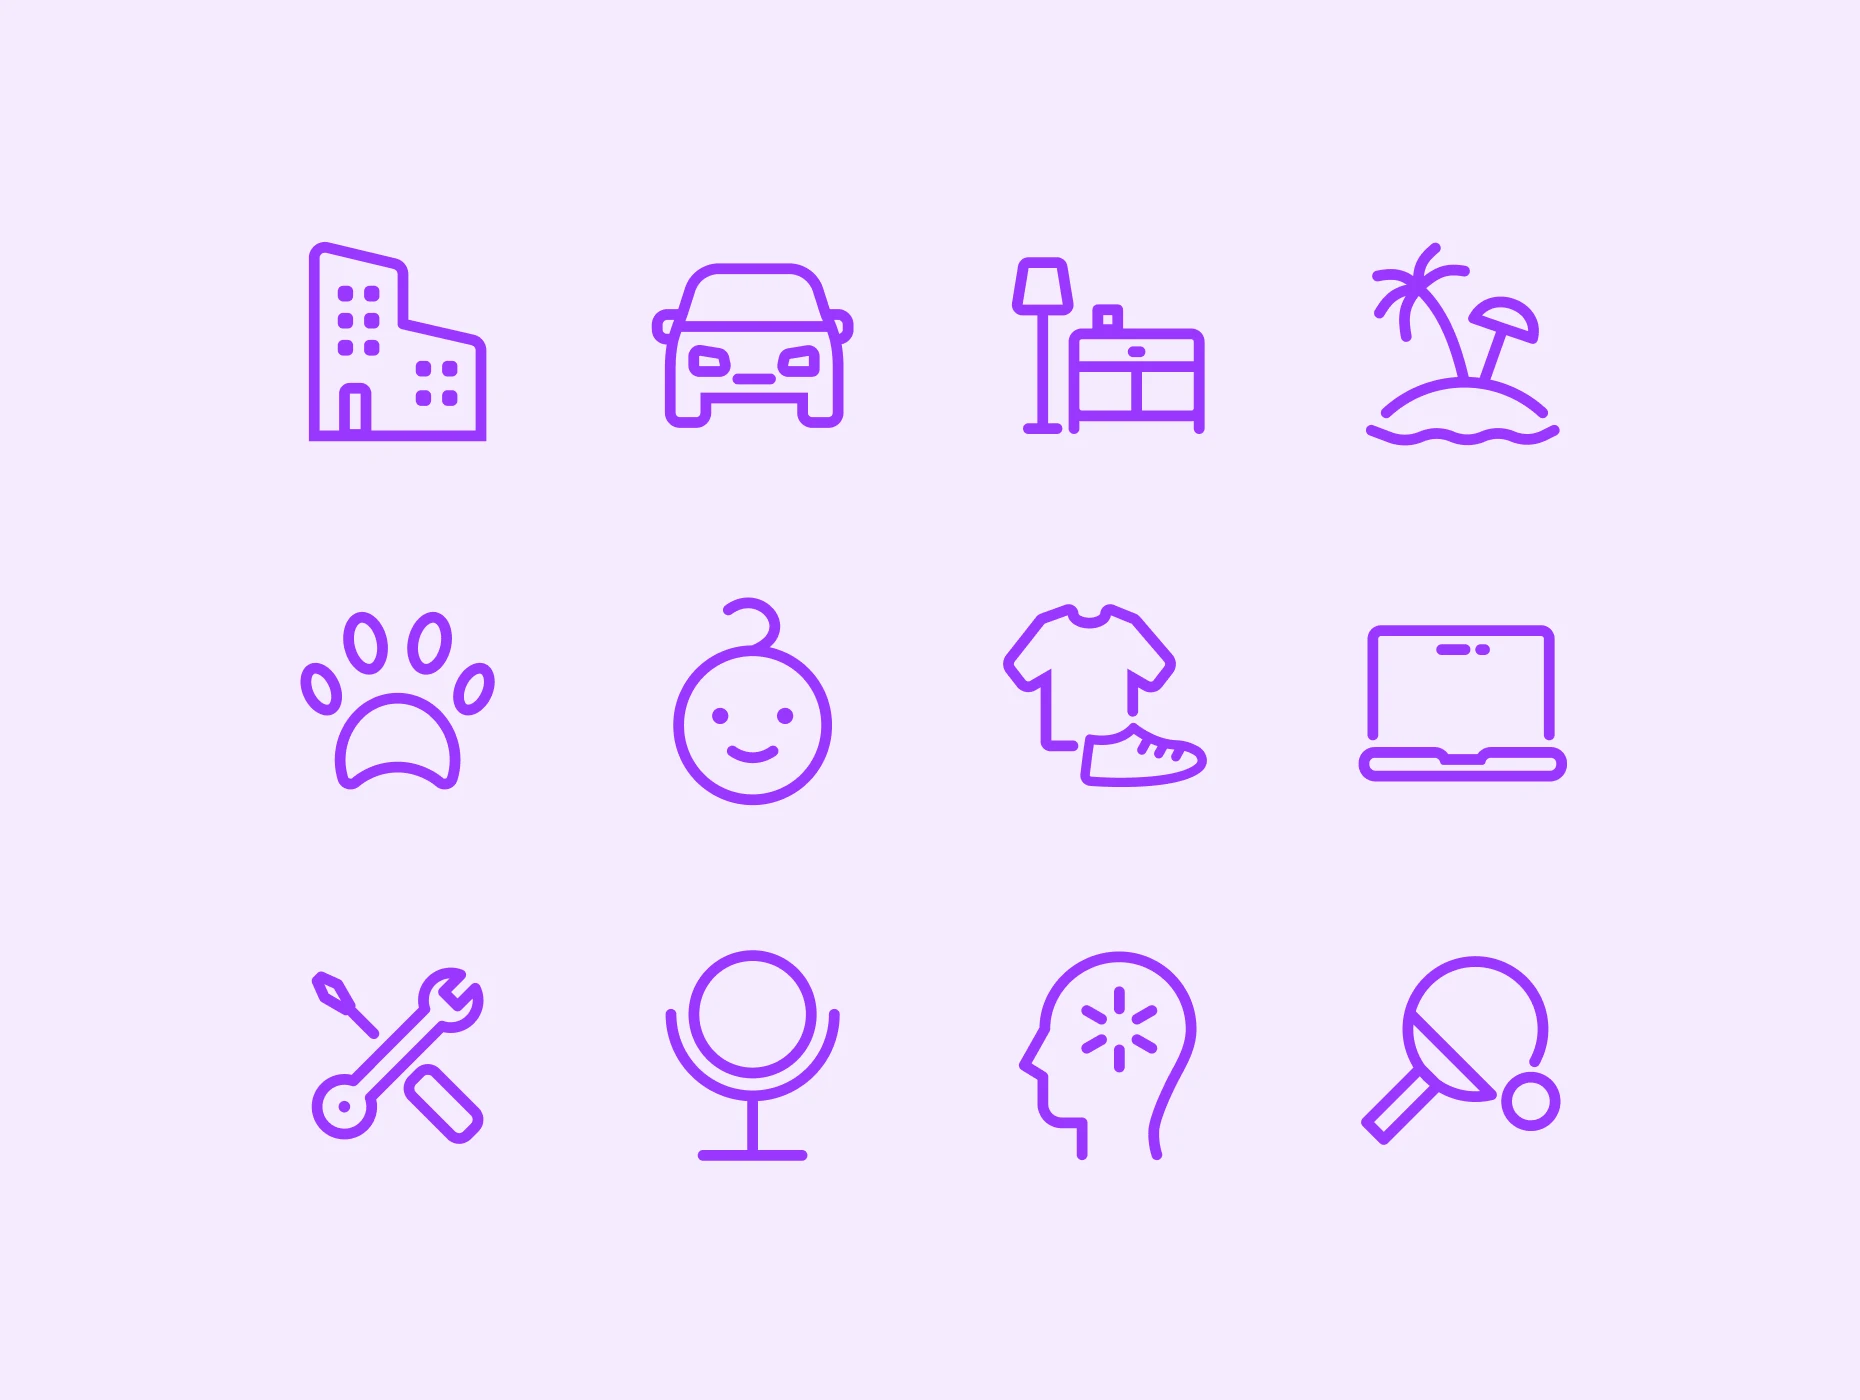 Разработанный набор иконок обладает уникальным стилем и способствует быстрому распознаванию различных категорий товаров.